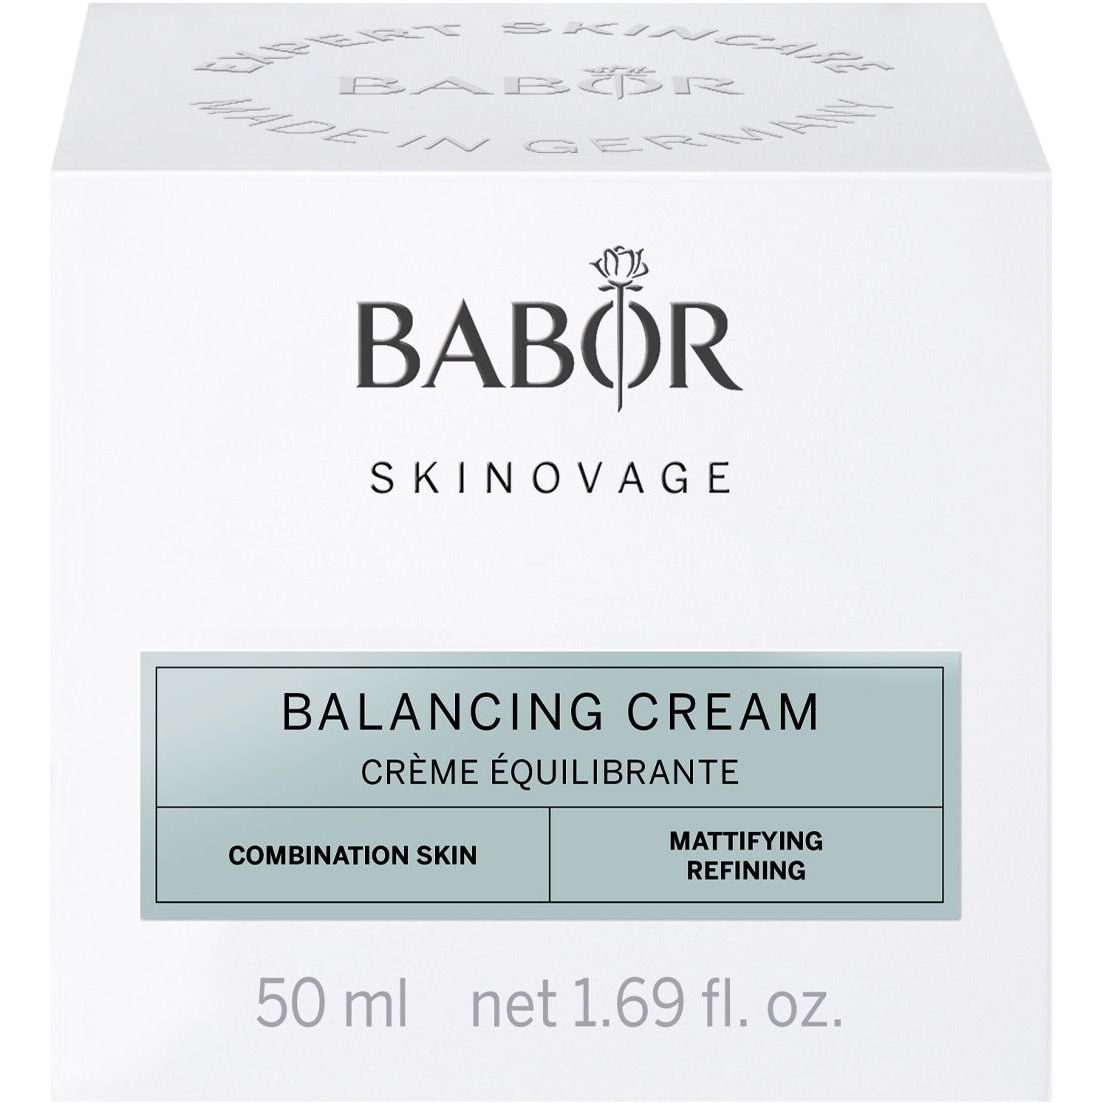 Крем для комбинированной кожи Babor Skinovage Balancing Cream 50 мл - фото 2